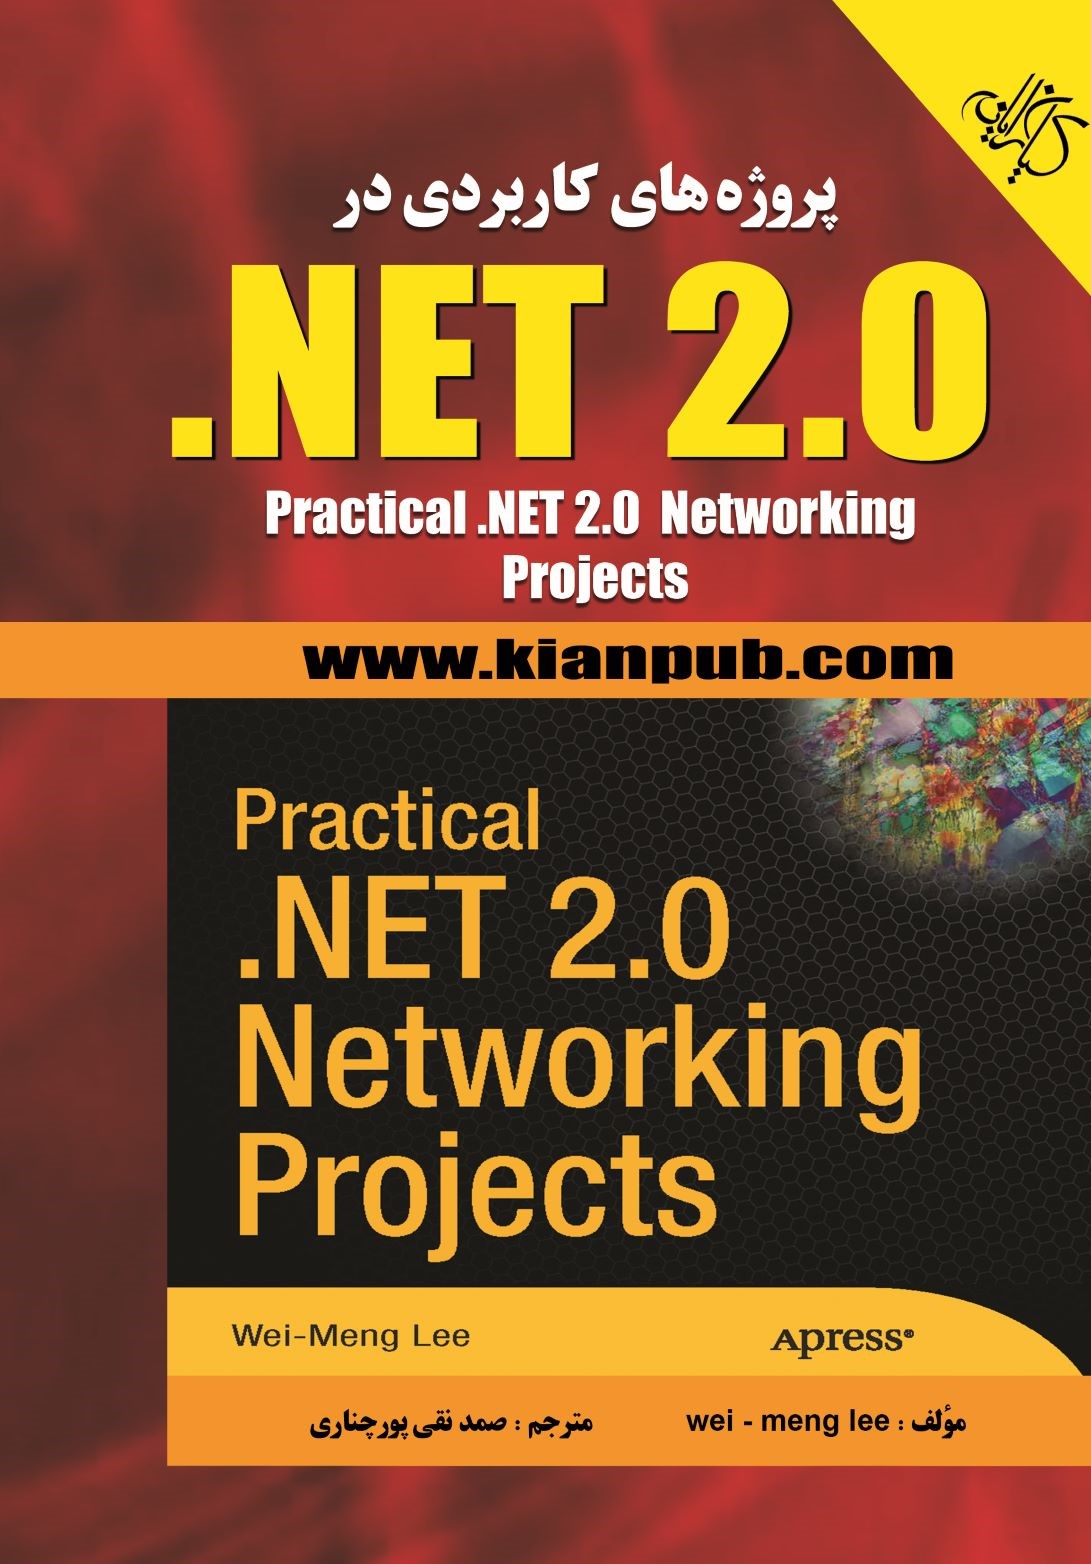  کتاب پروژه های کاربردی در NET 2.0.